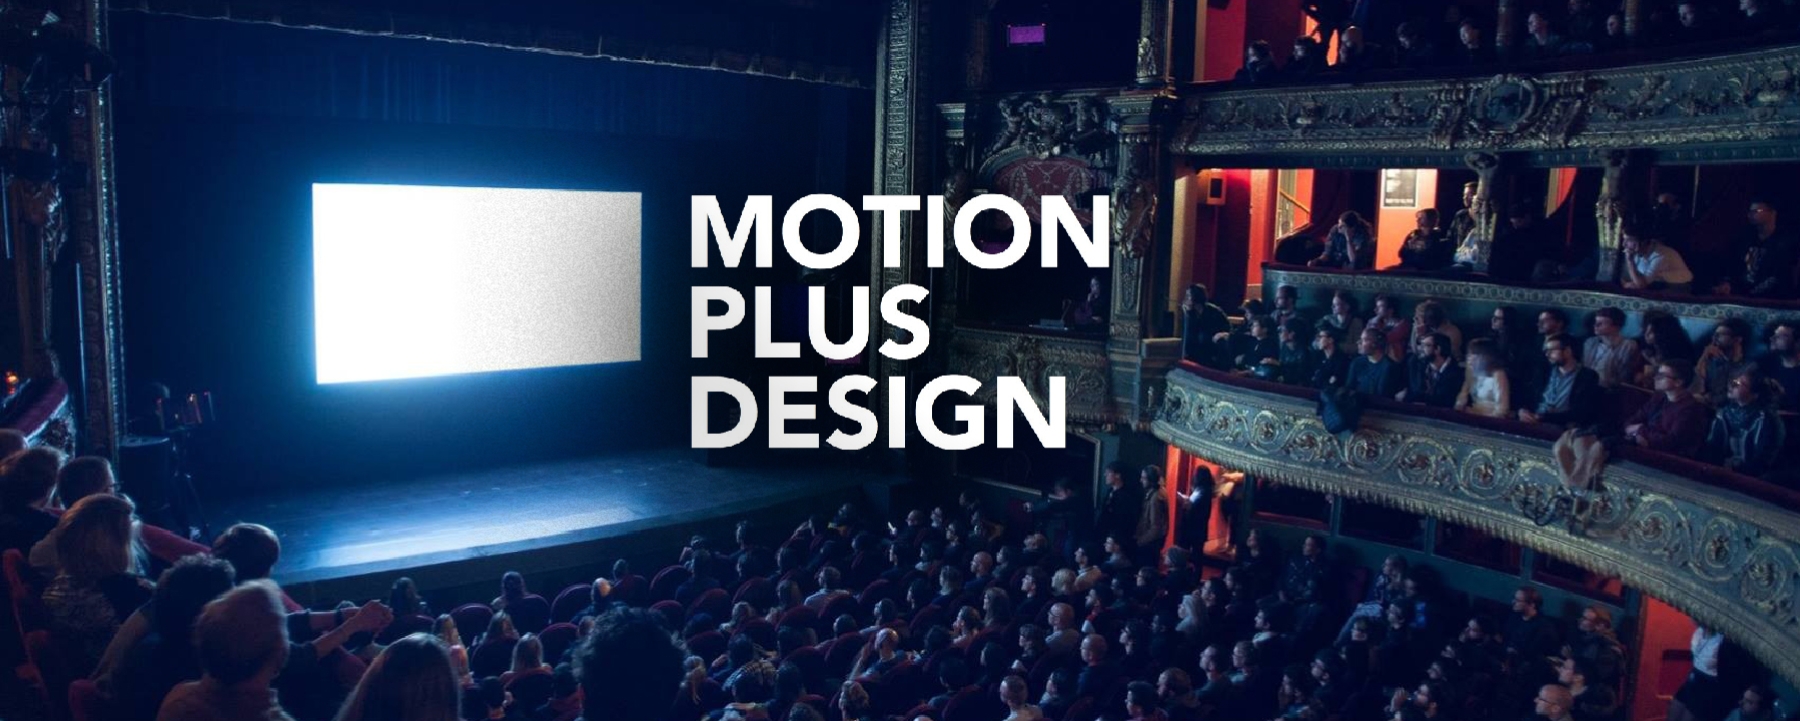 Motion Plus Design Paris